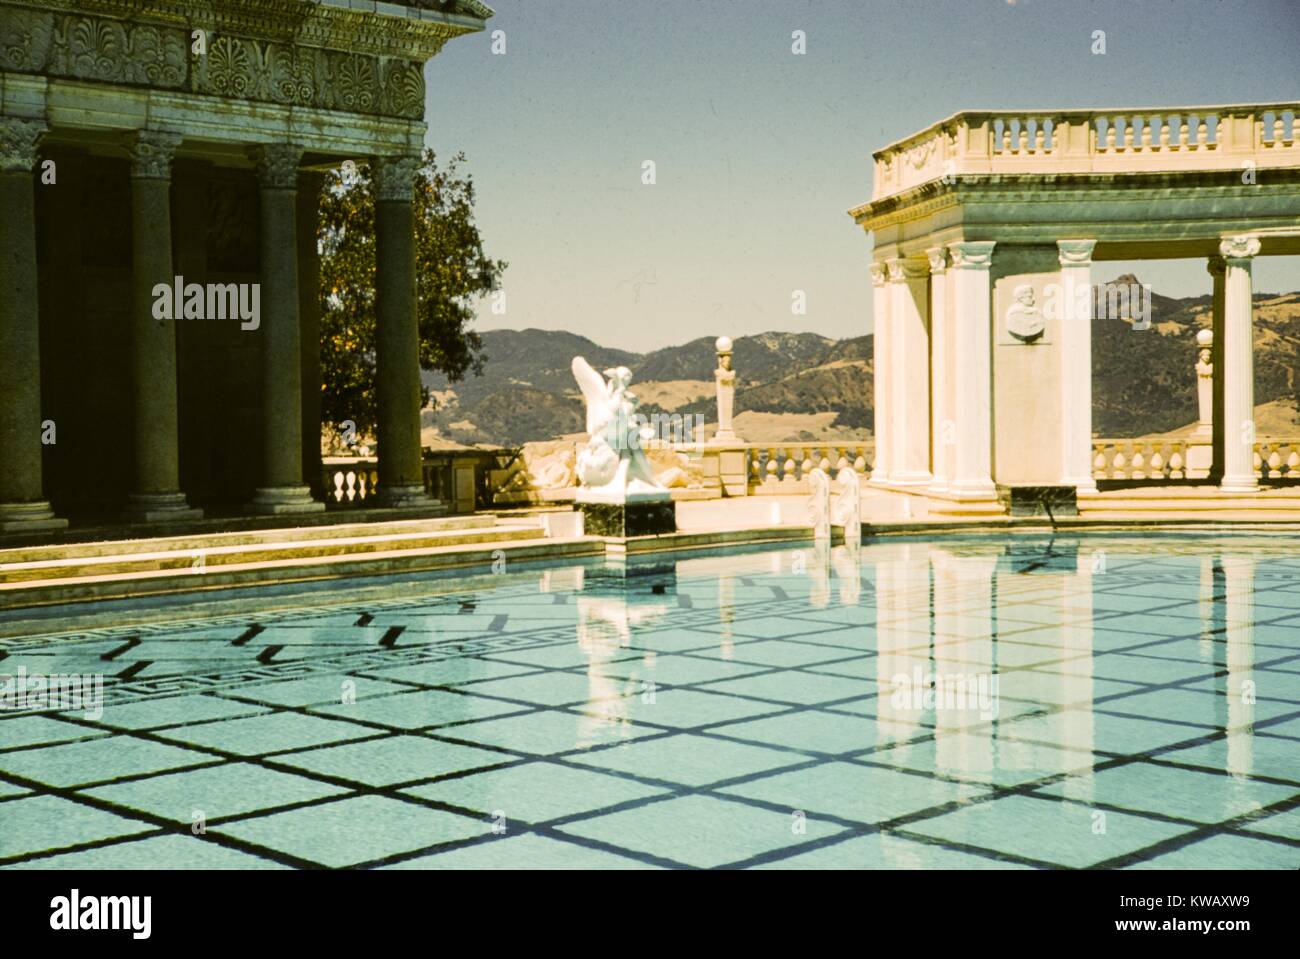 Un Temple Romain façade, une statue et un pavillon de marbre s'asseoir au bord de la piscine Neptune à Hearst Castle, San Simeon, California, 1960. Banque D'Images